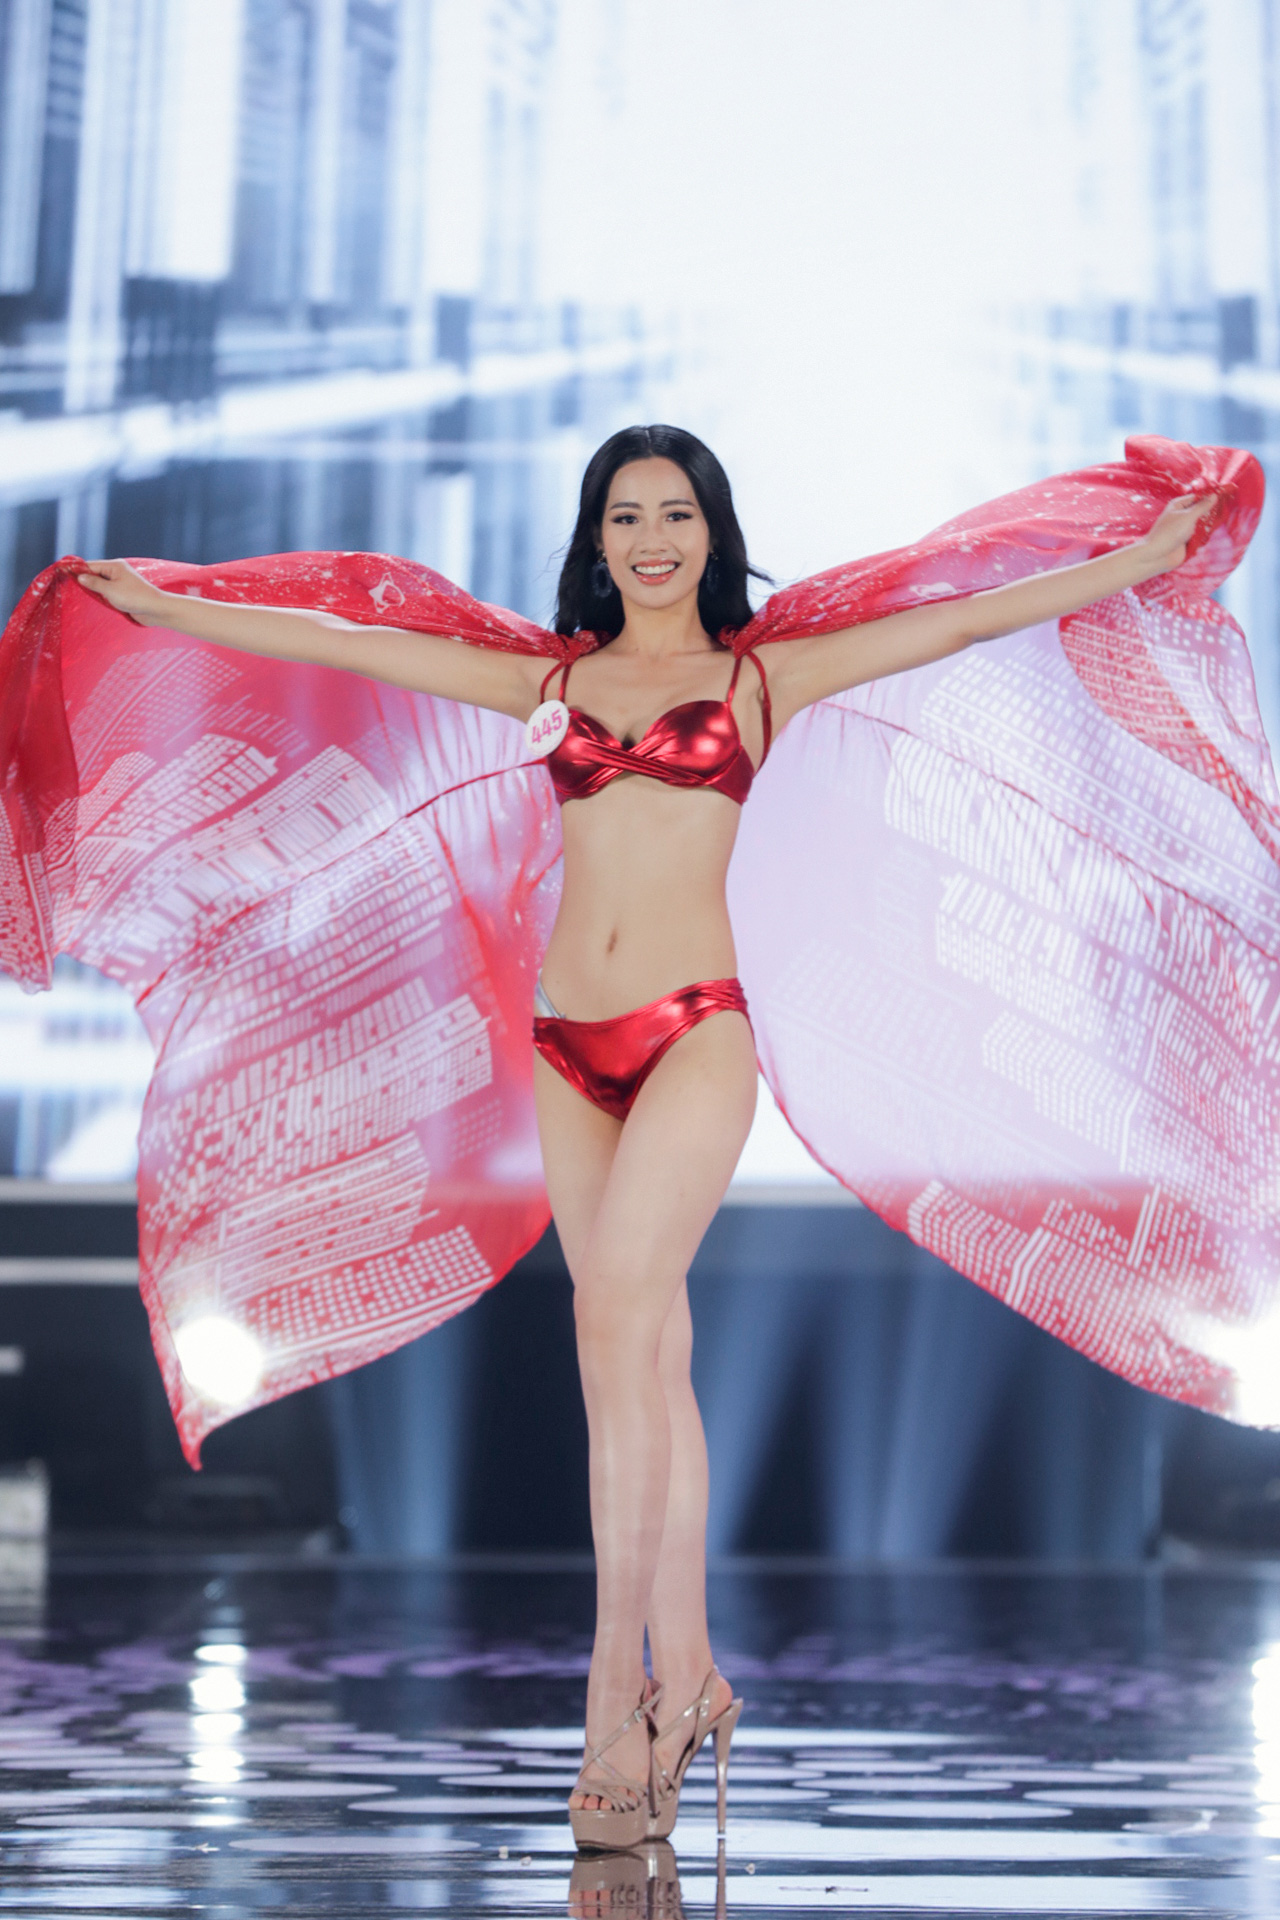 Top 22 trình diễn bikini cực kì nóng bỏng tại chung kết Hoa hậu Việt Nam 2020   - Ảnh 1.